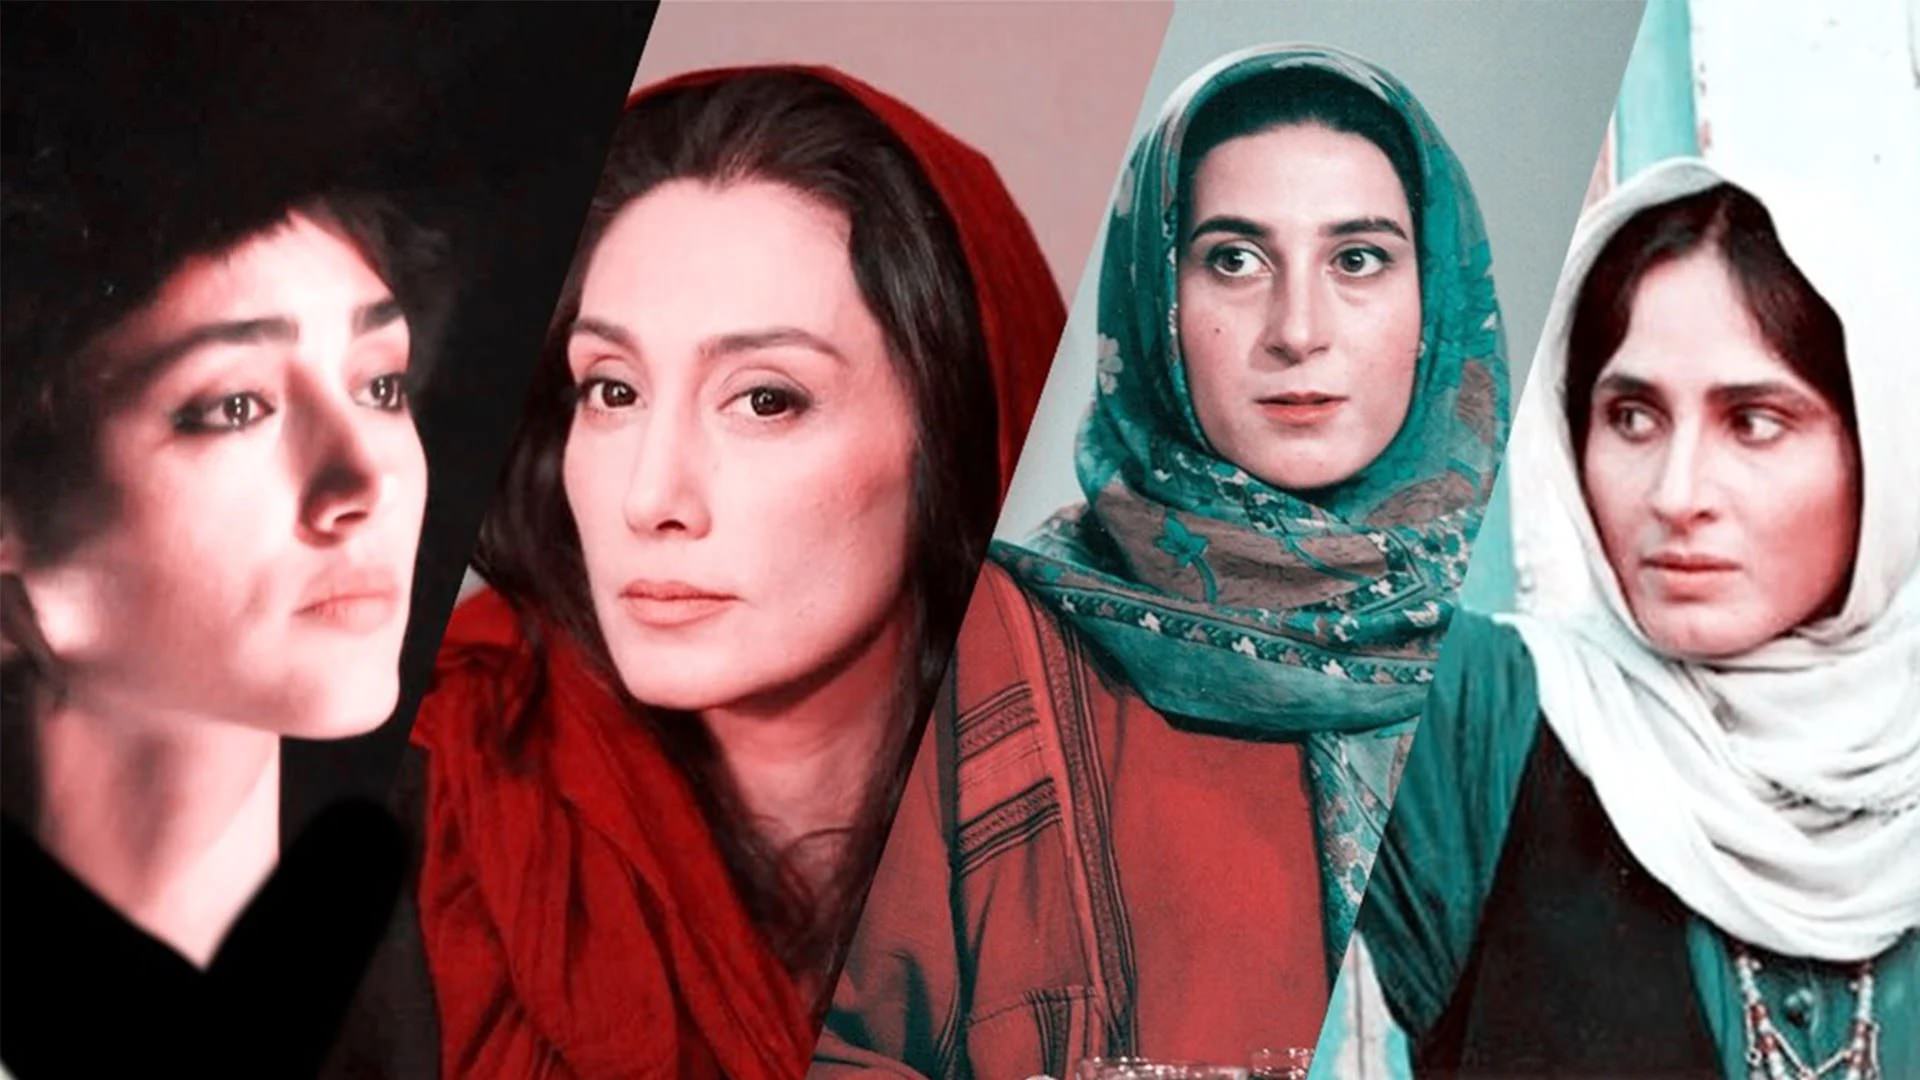 بهترین بازیگران زن ایرانی